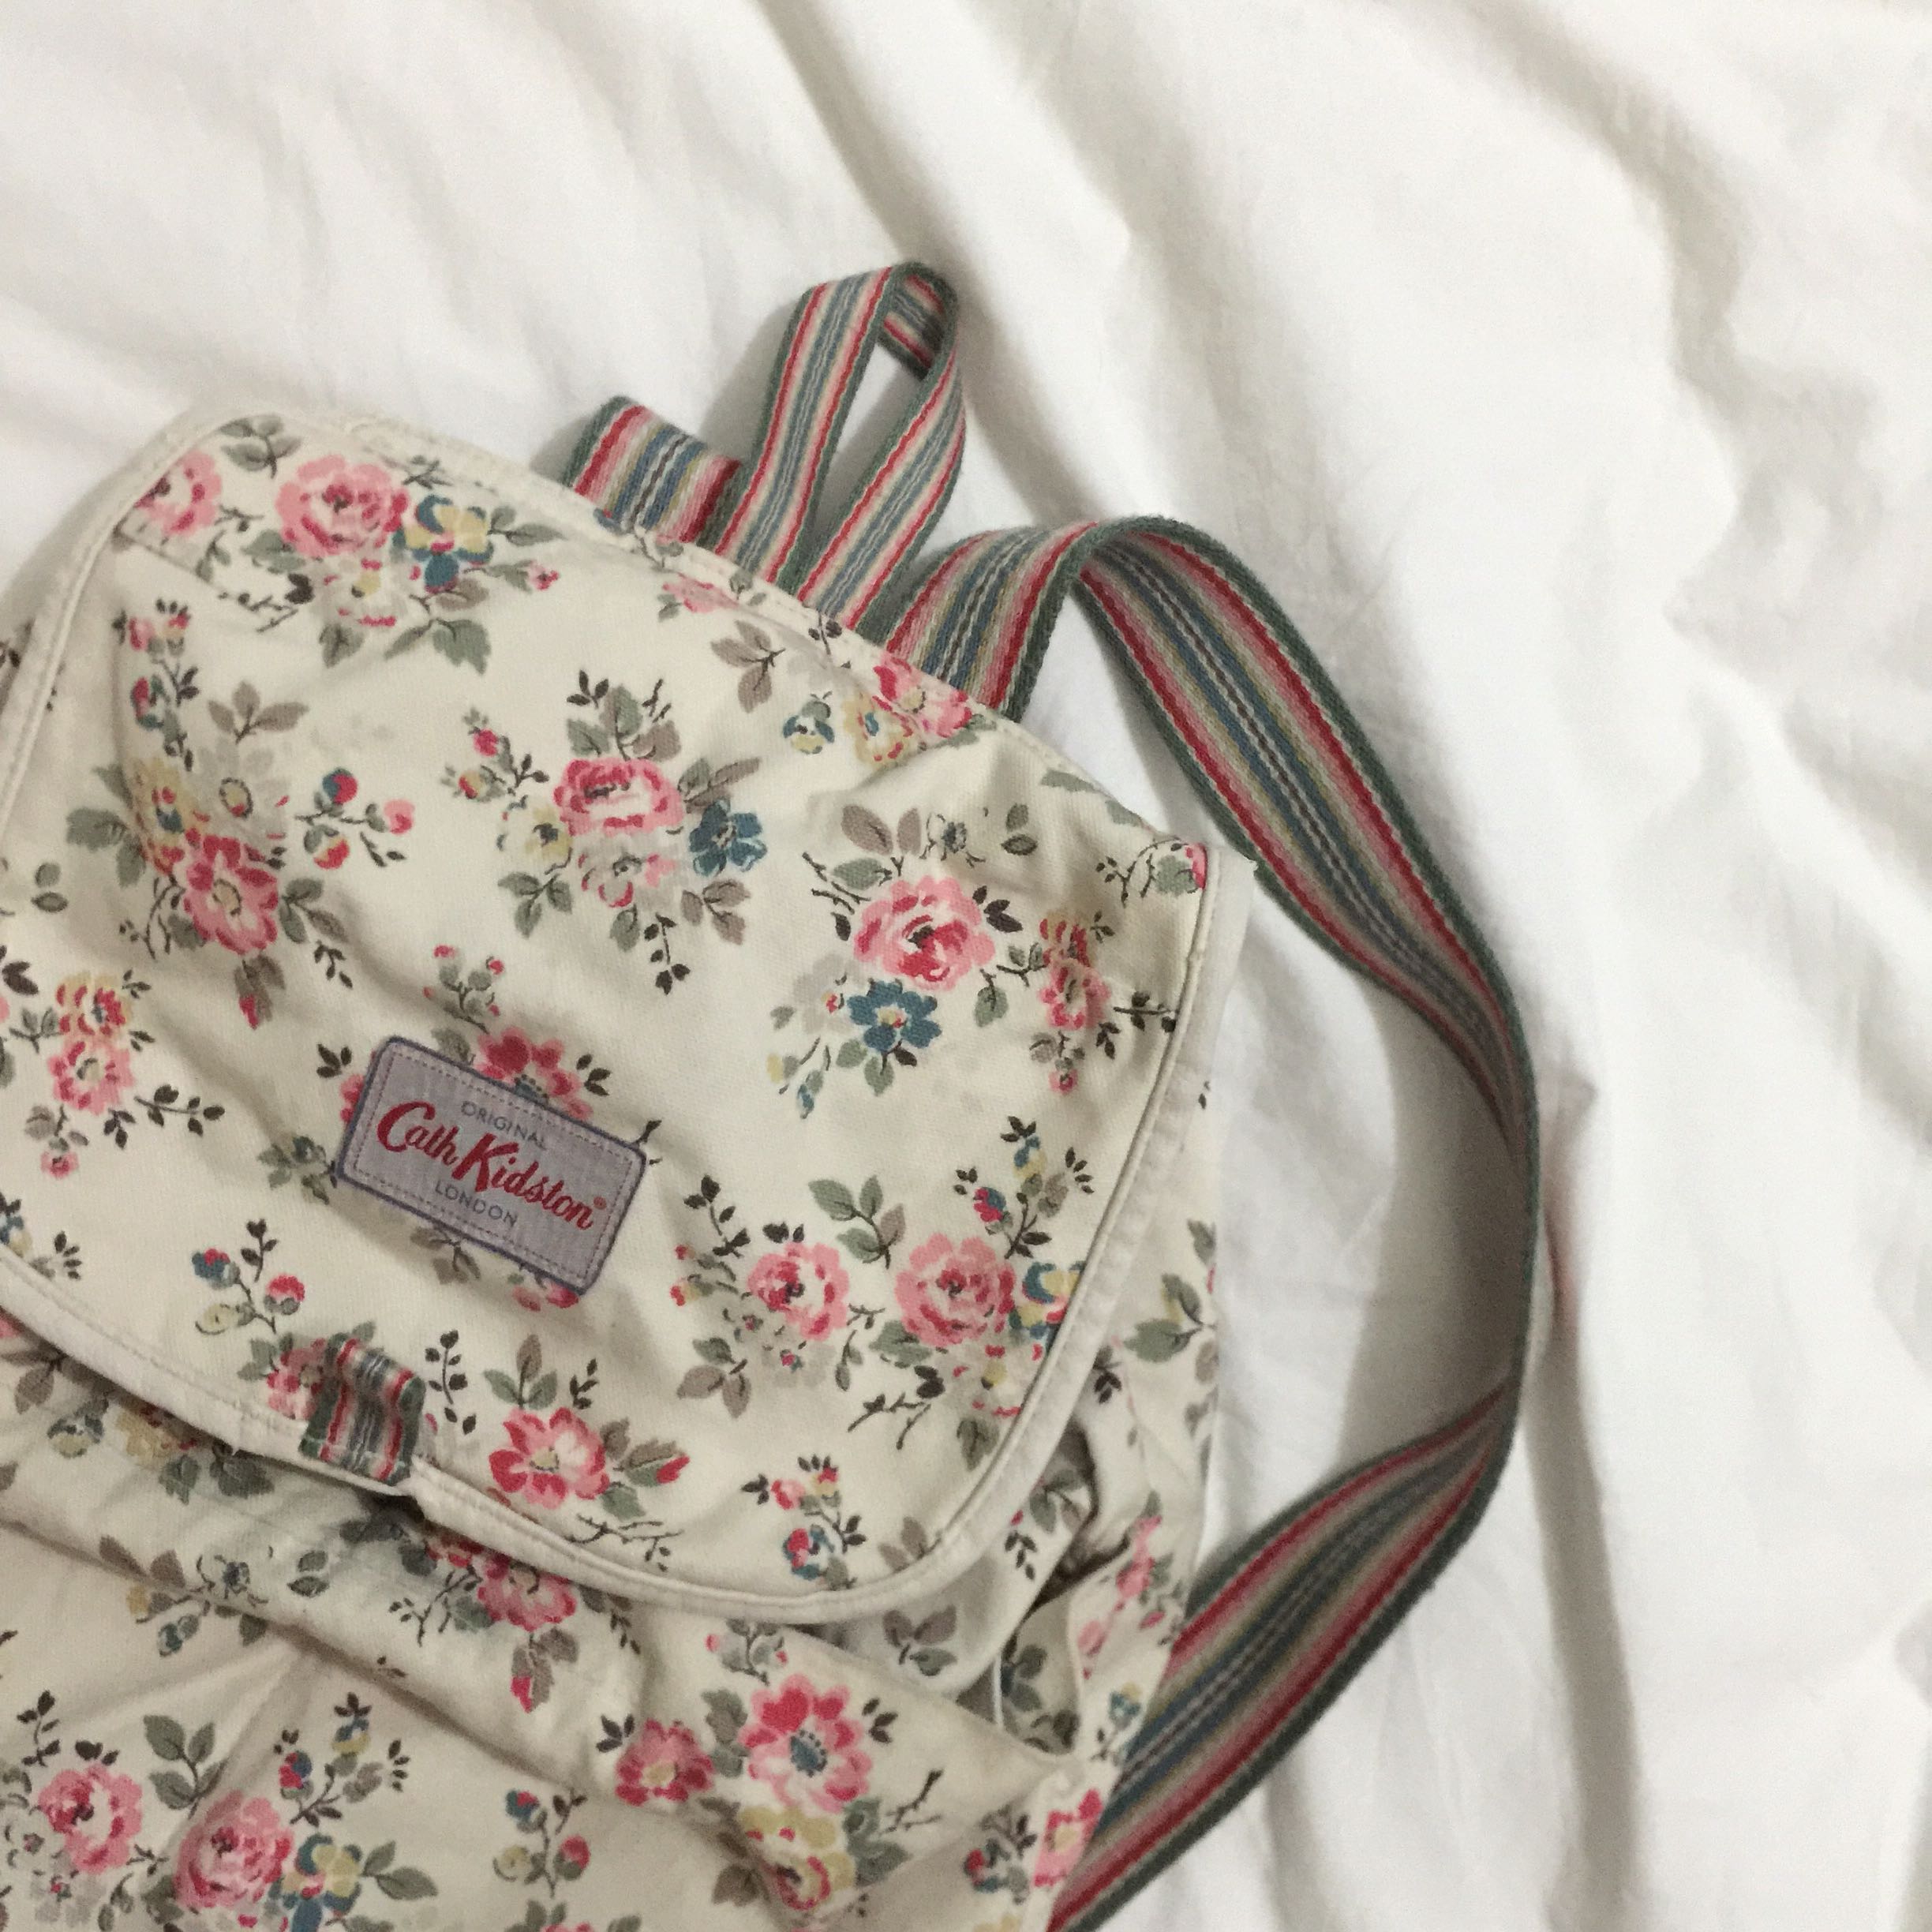 cath kidston flower backpack